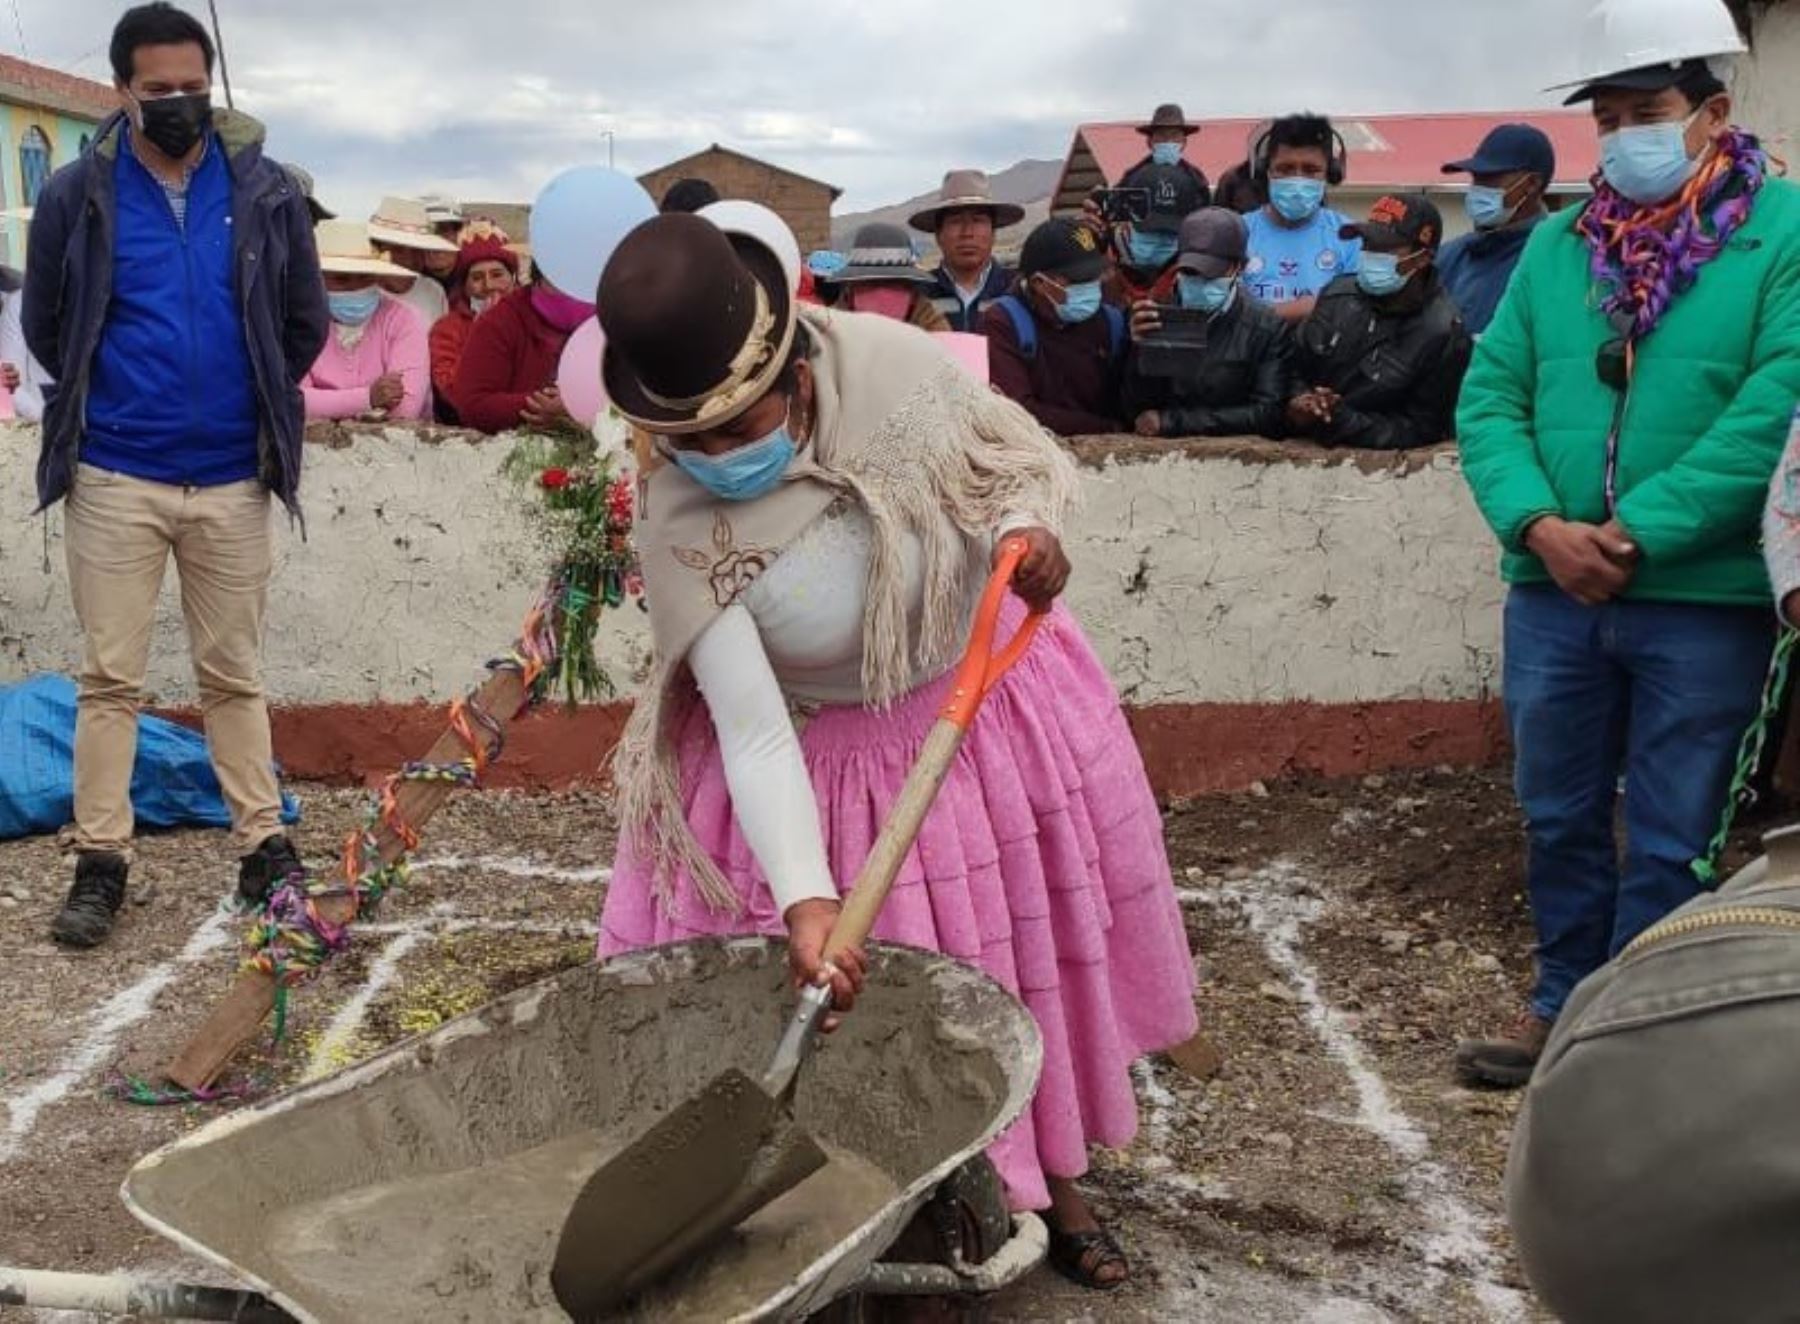 Ministerio de Vivienda invierte cerca de S/ 10 millones en obra de saneamiento en comunidad aimara en distrito de Juli, provincia de Chucuito, región Puno. Foto: ANDINA/difusión.